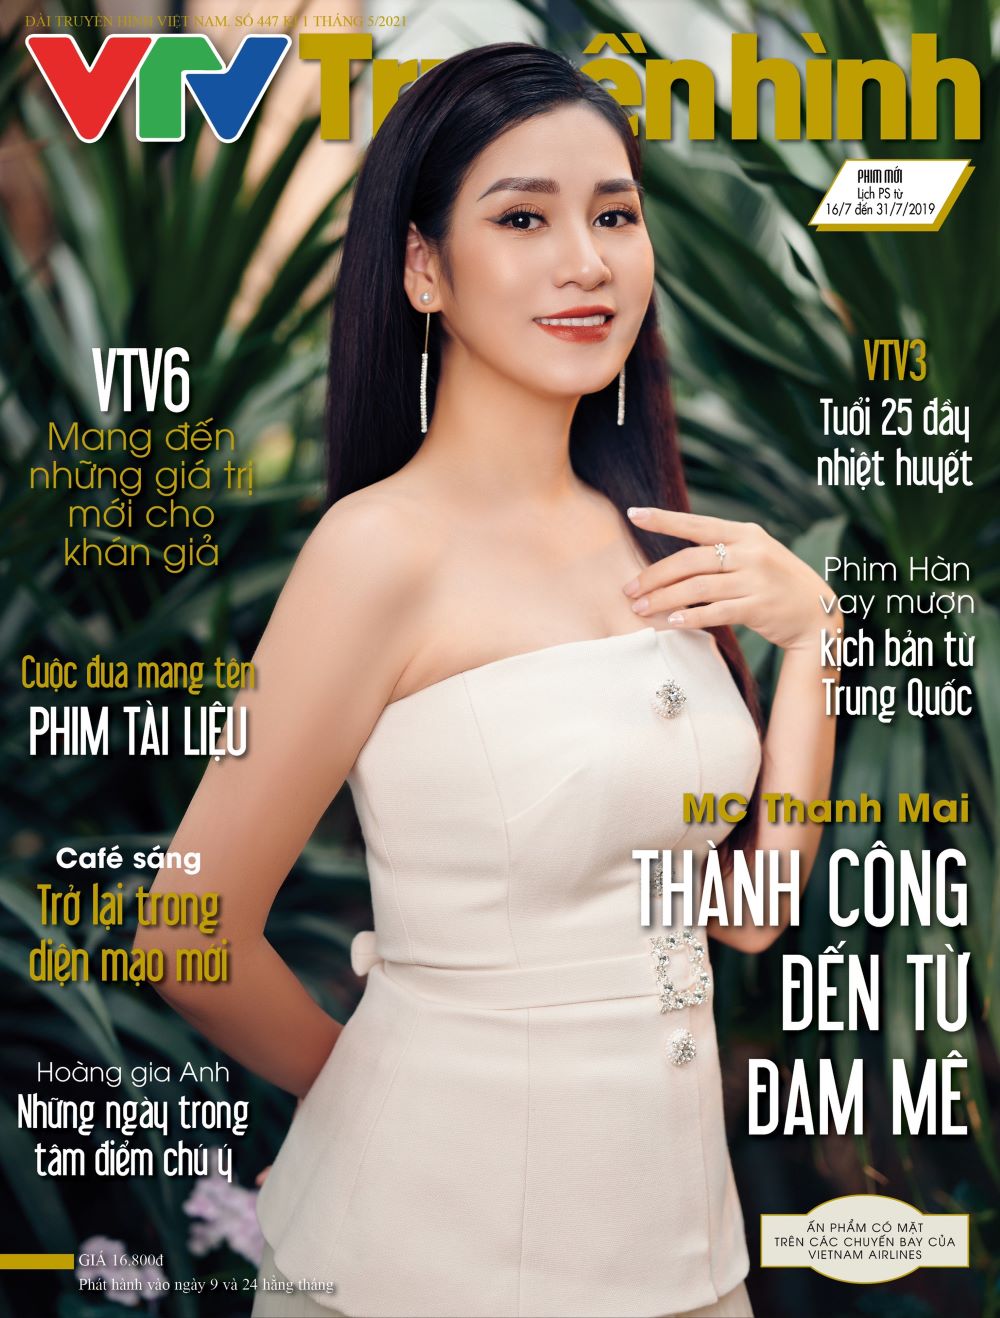 Gương mặt trang bìa tạp chí truyền hình VTV - MC Thanh Mai cùng câu chuyện "Thành công đến từ đam mê"